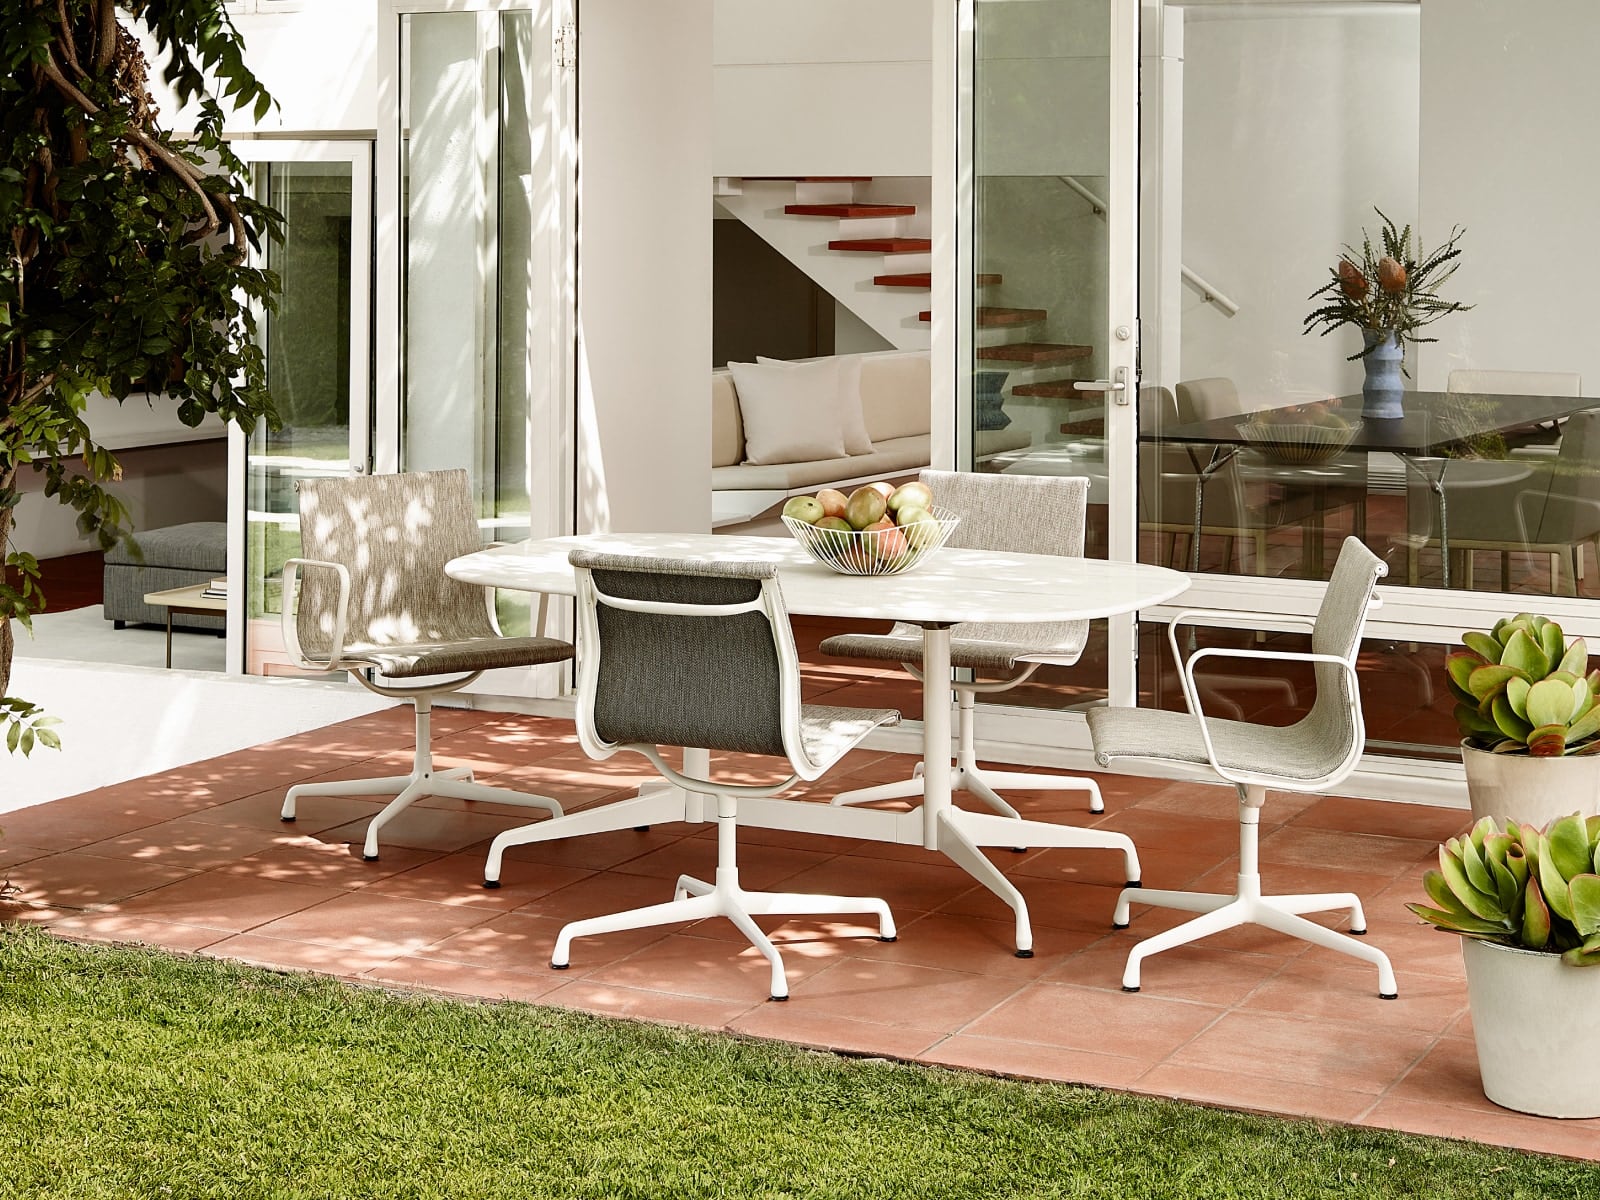 Cuatro sillas de visita Eames Aluminum Group para exterior junto a una mesa de exterior Eames en un ambiente de patio.